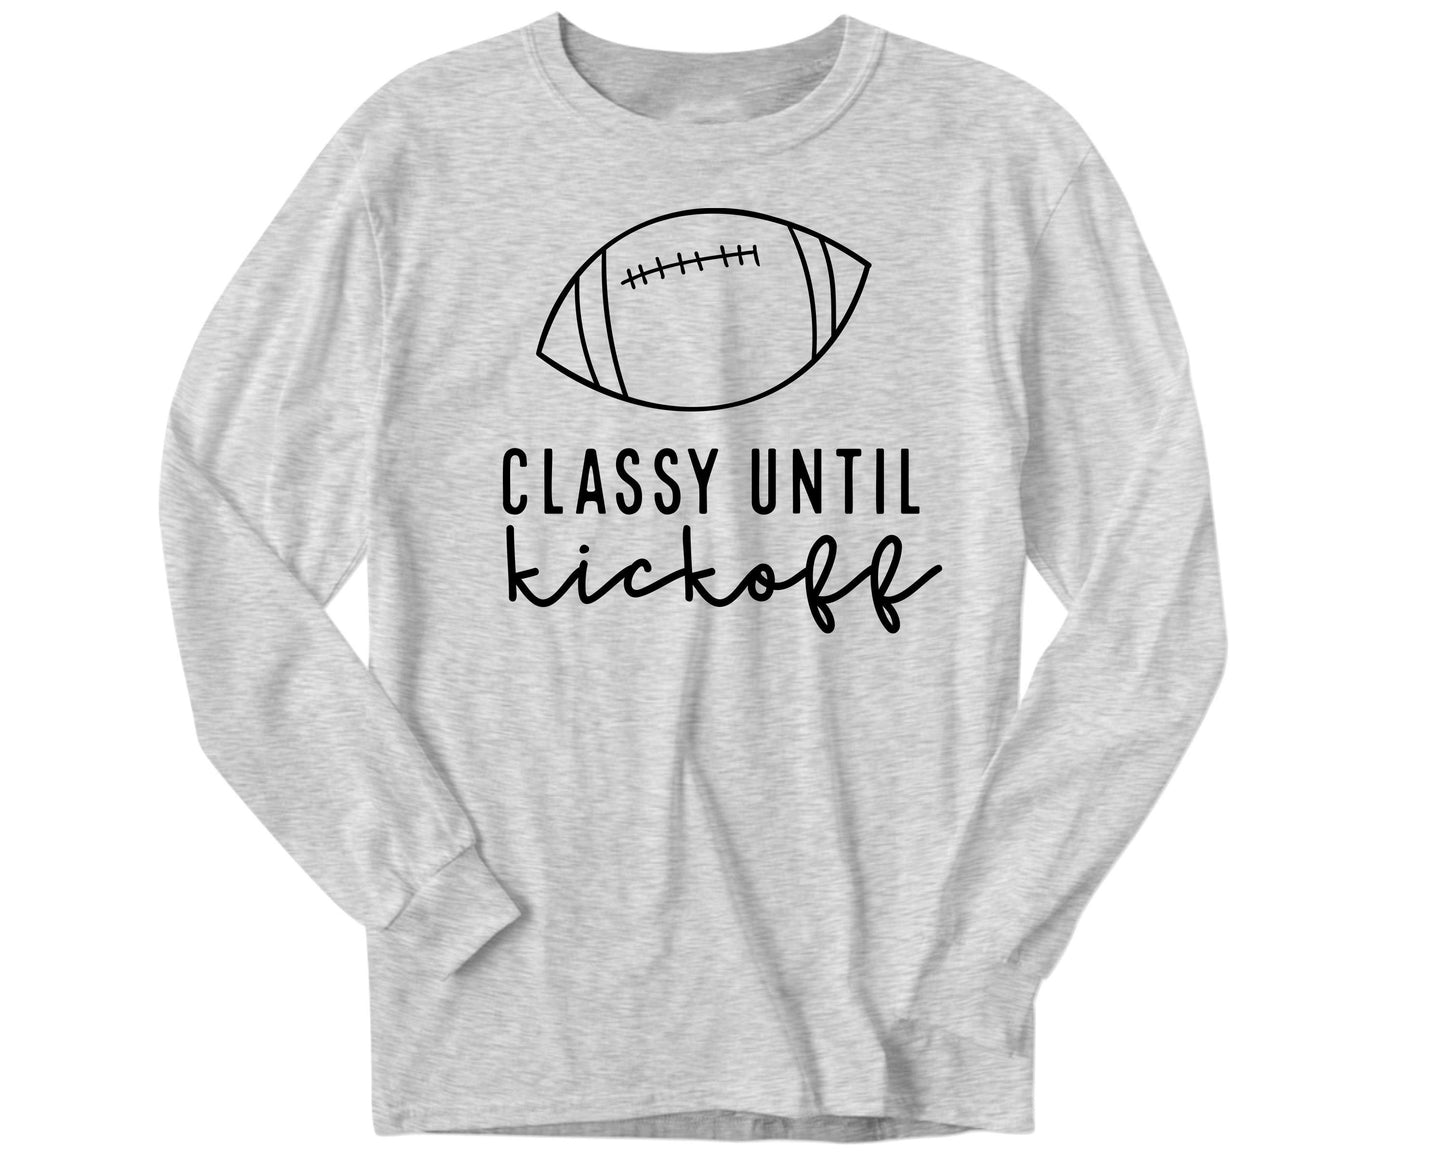 Classy Until Kickoff - Women's shirts -  Rustic Cuts